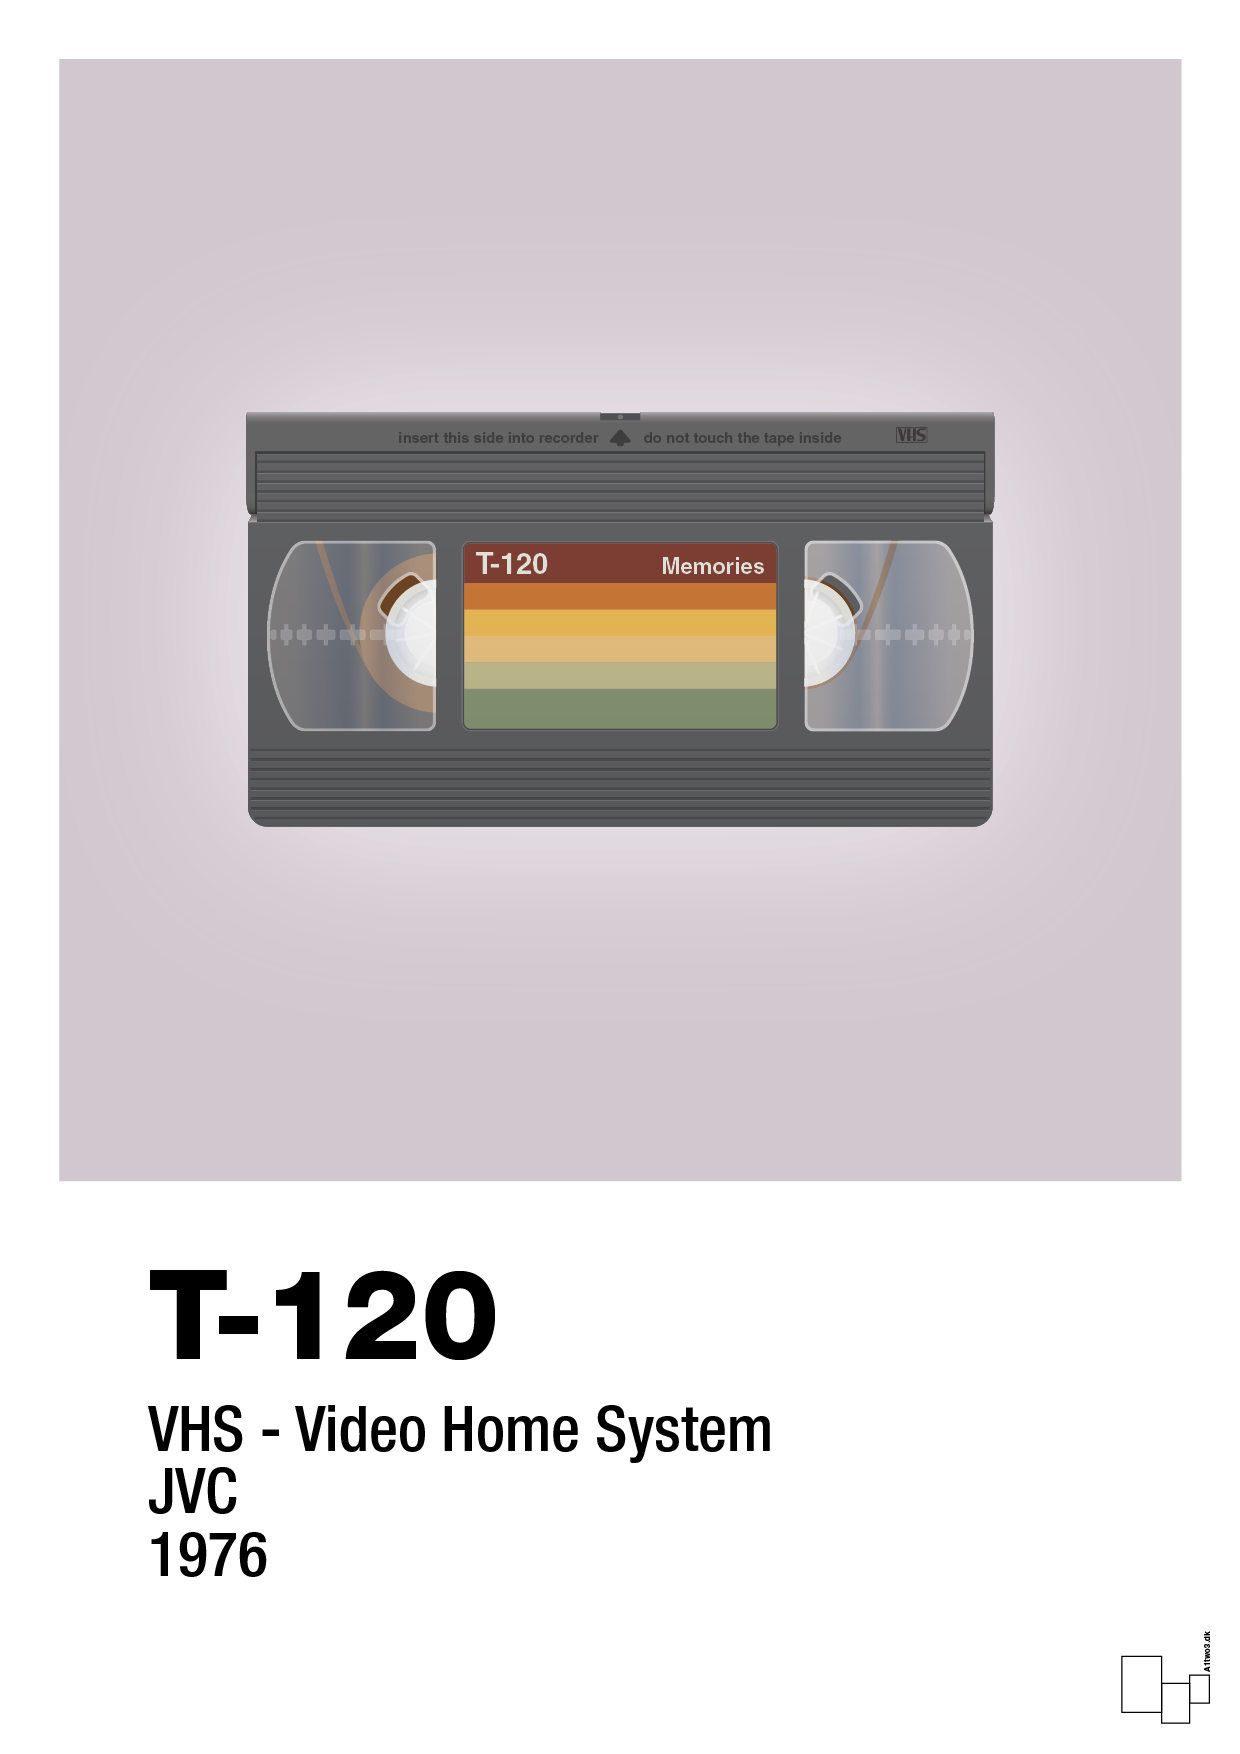 videobånd t-120 - Plakat med Grafik i Dusty Lilac